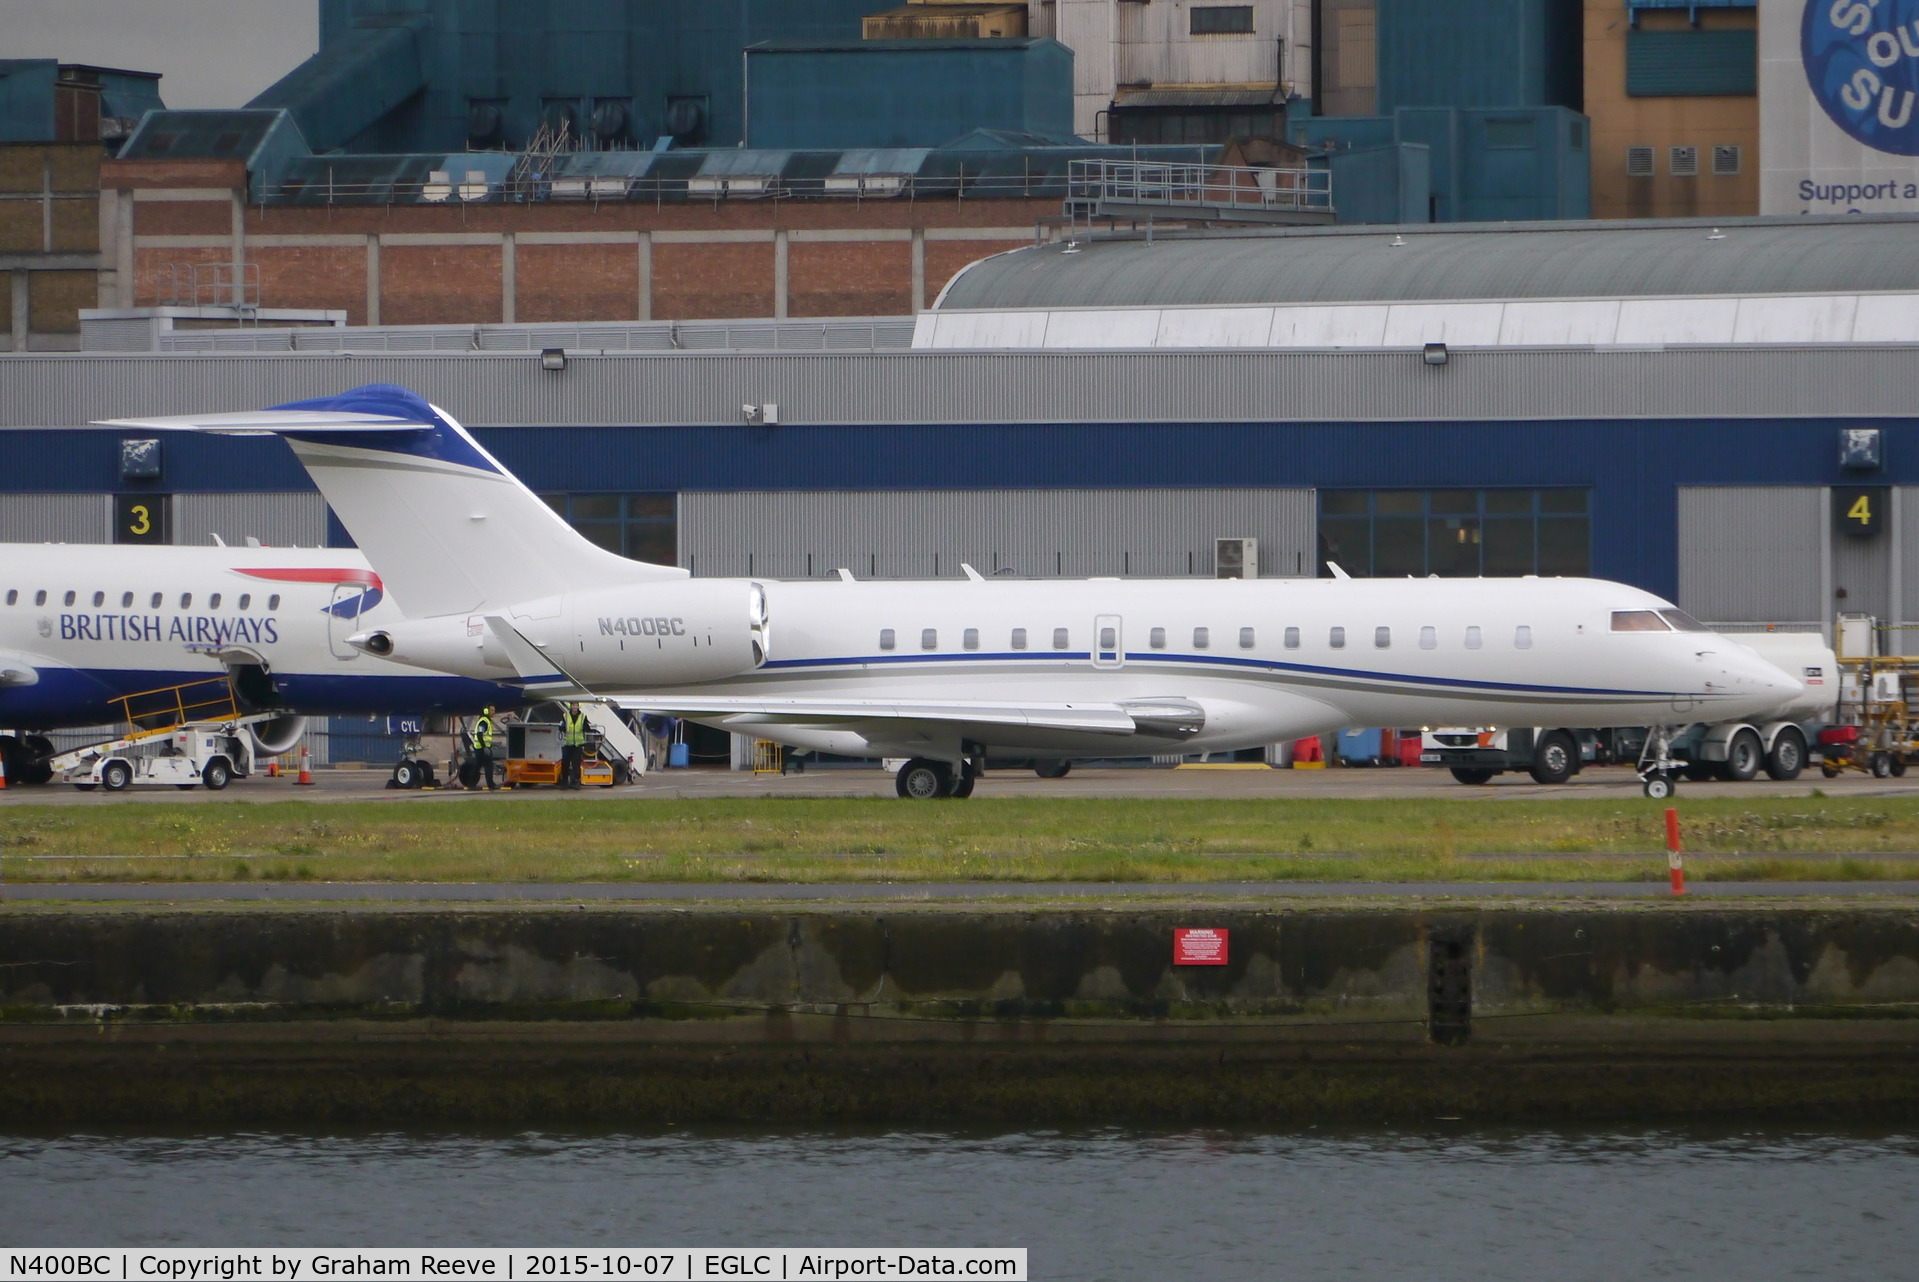 N400BC, 2013 Bombardier BD-700-1A10 Global 6000 C/N 9573, Just landed.